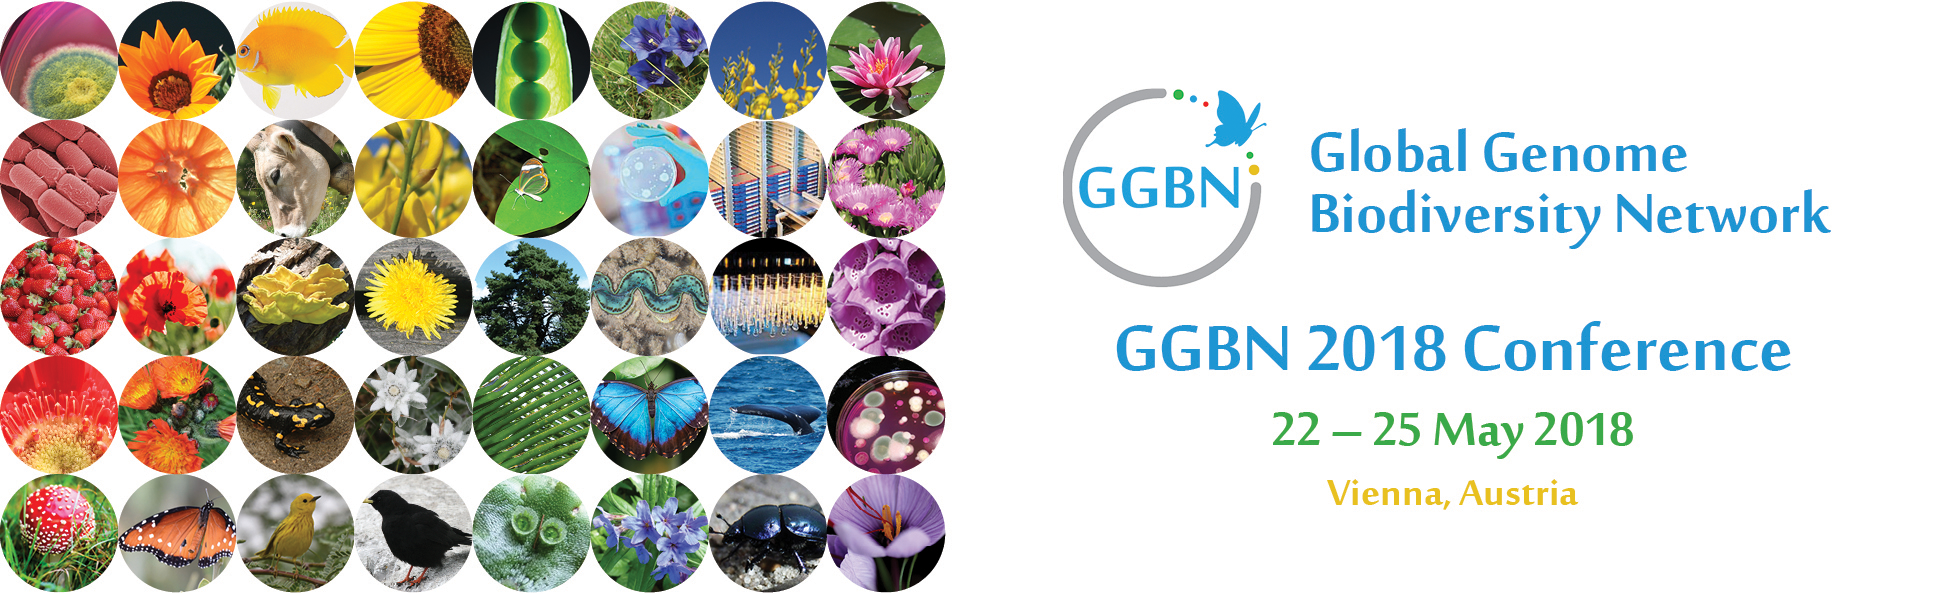 GGBN 2018 Logo